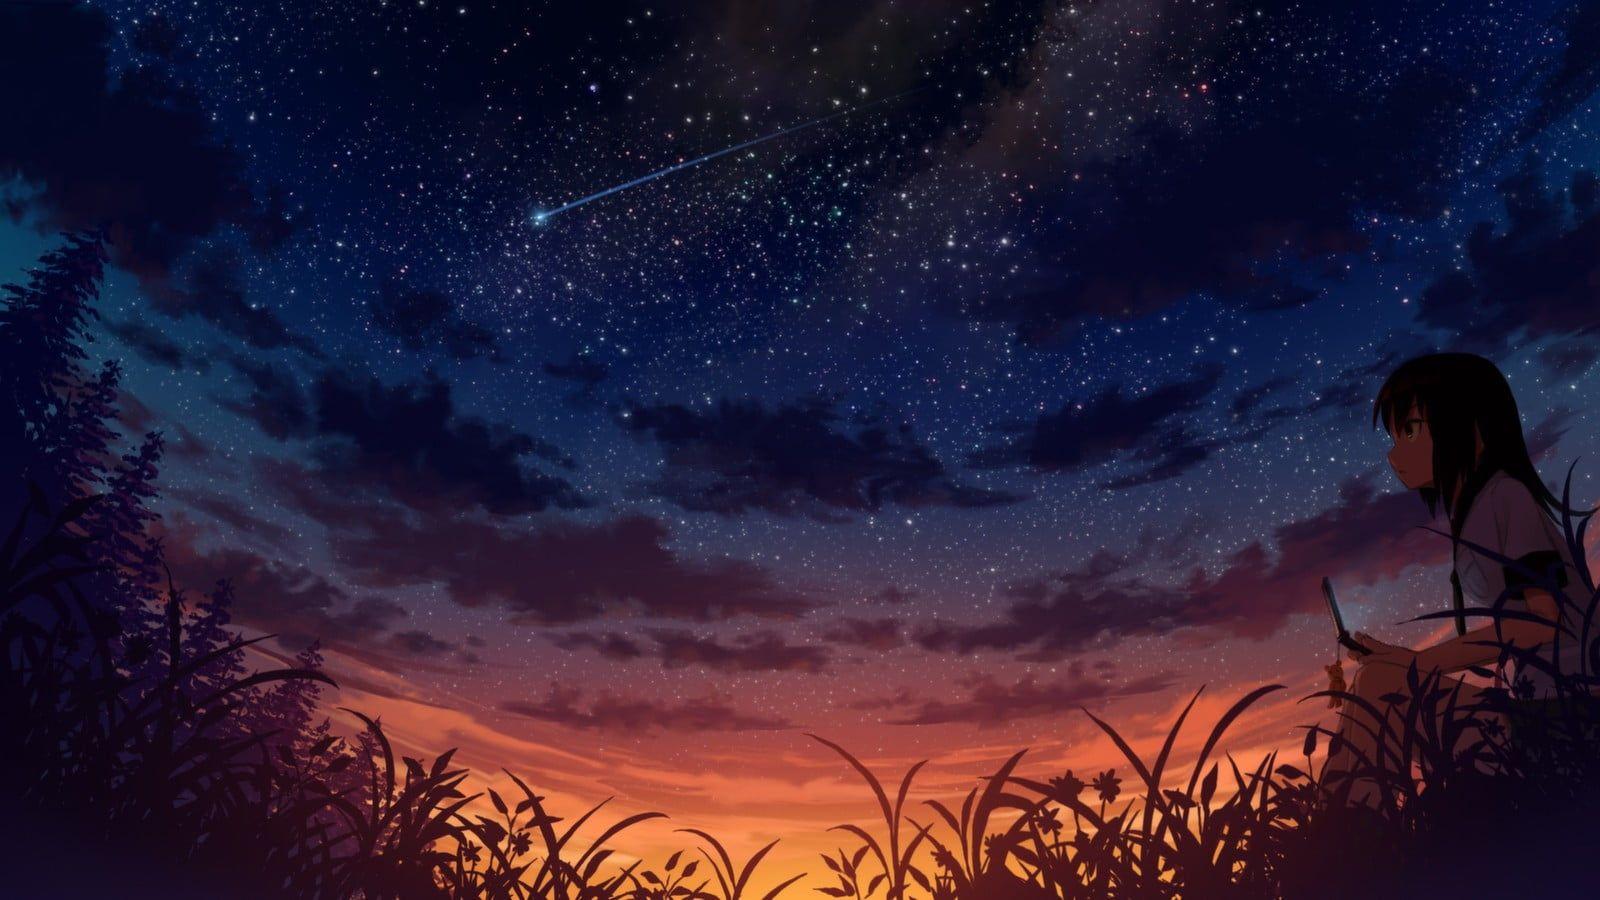 Night sky with shooting star on display anime digital wallpaper HD